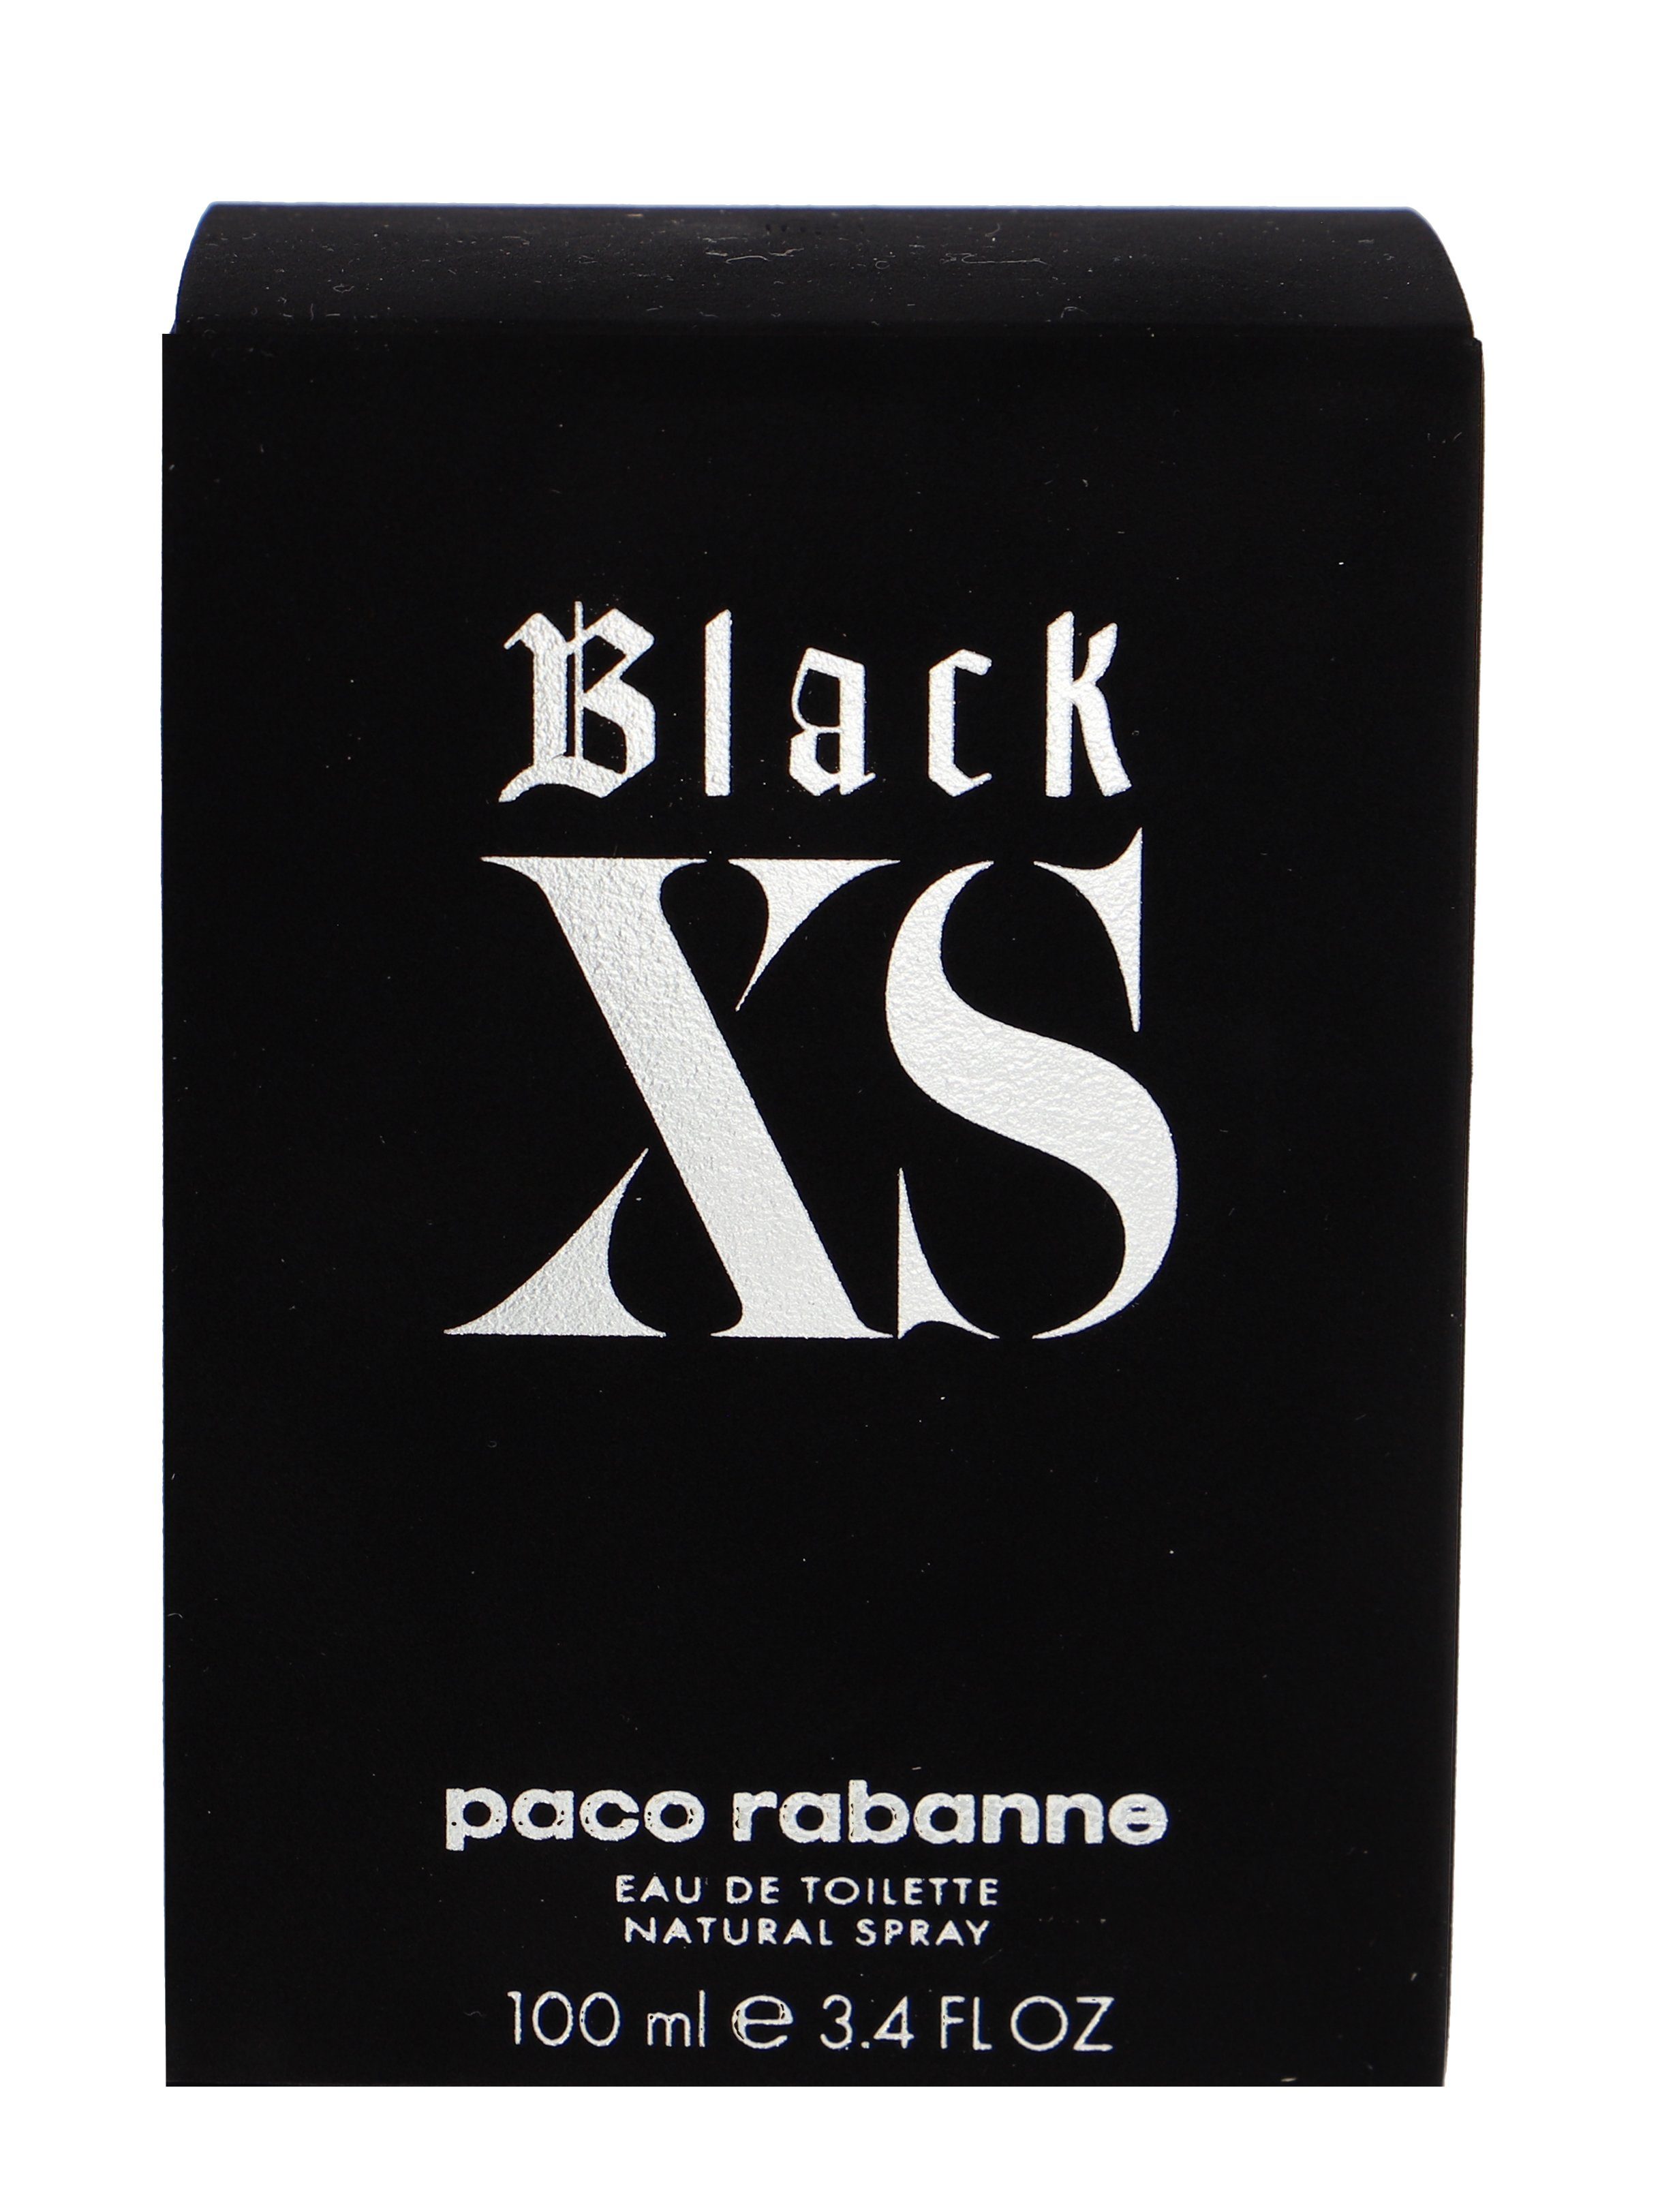 XS Paco rabanne Toilette Rabanne Eau de Black paco